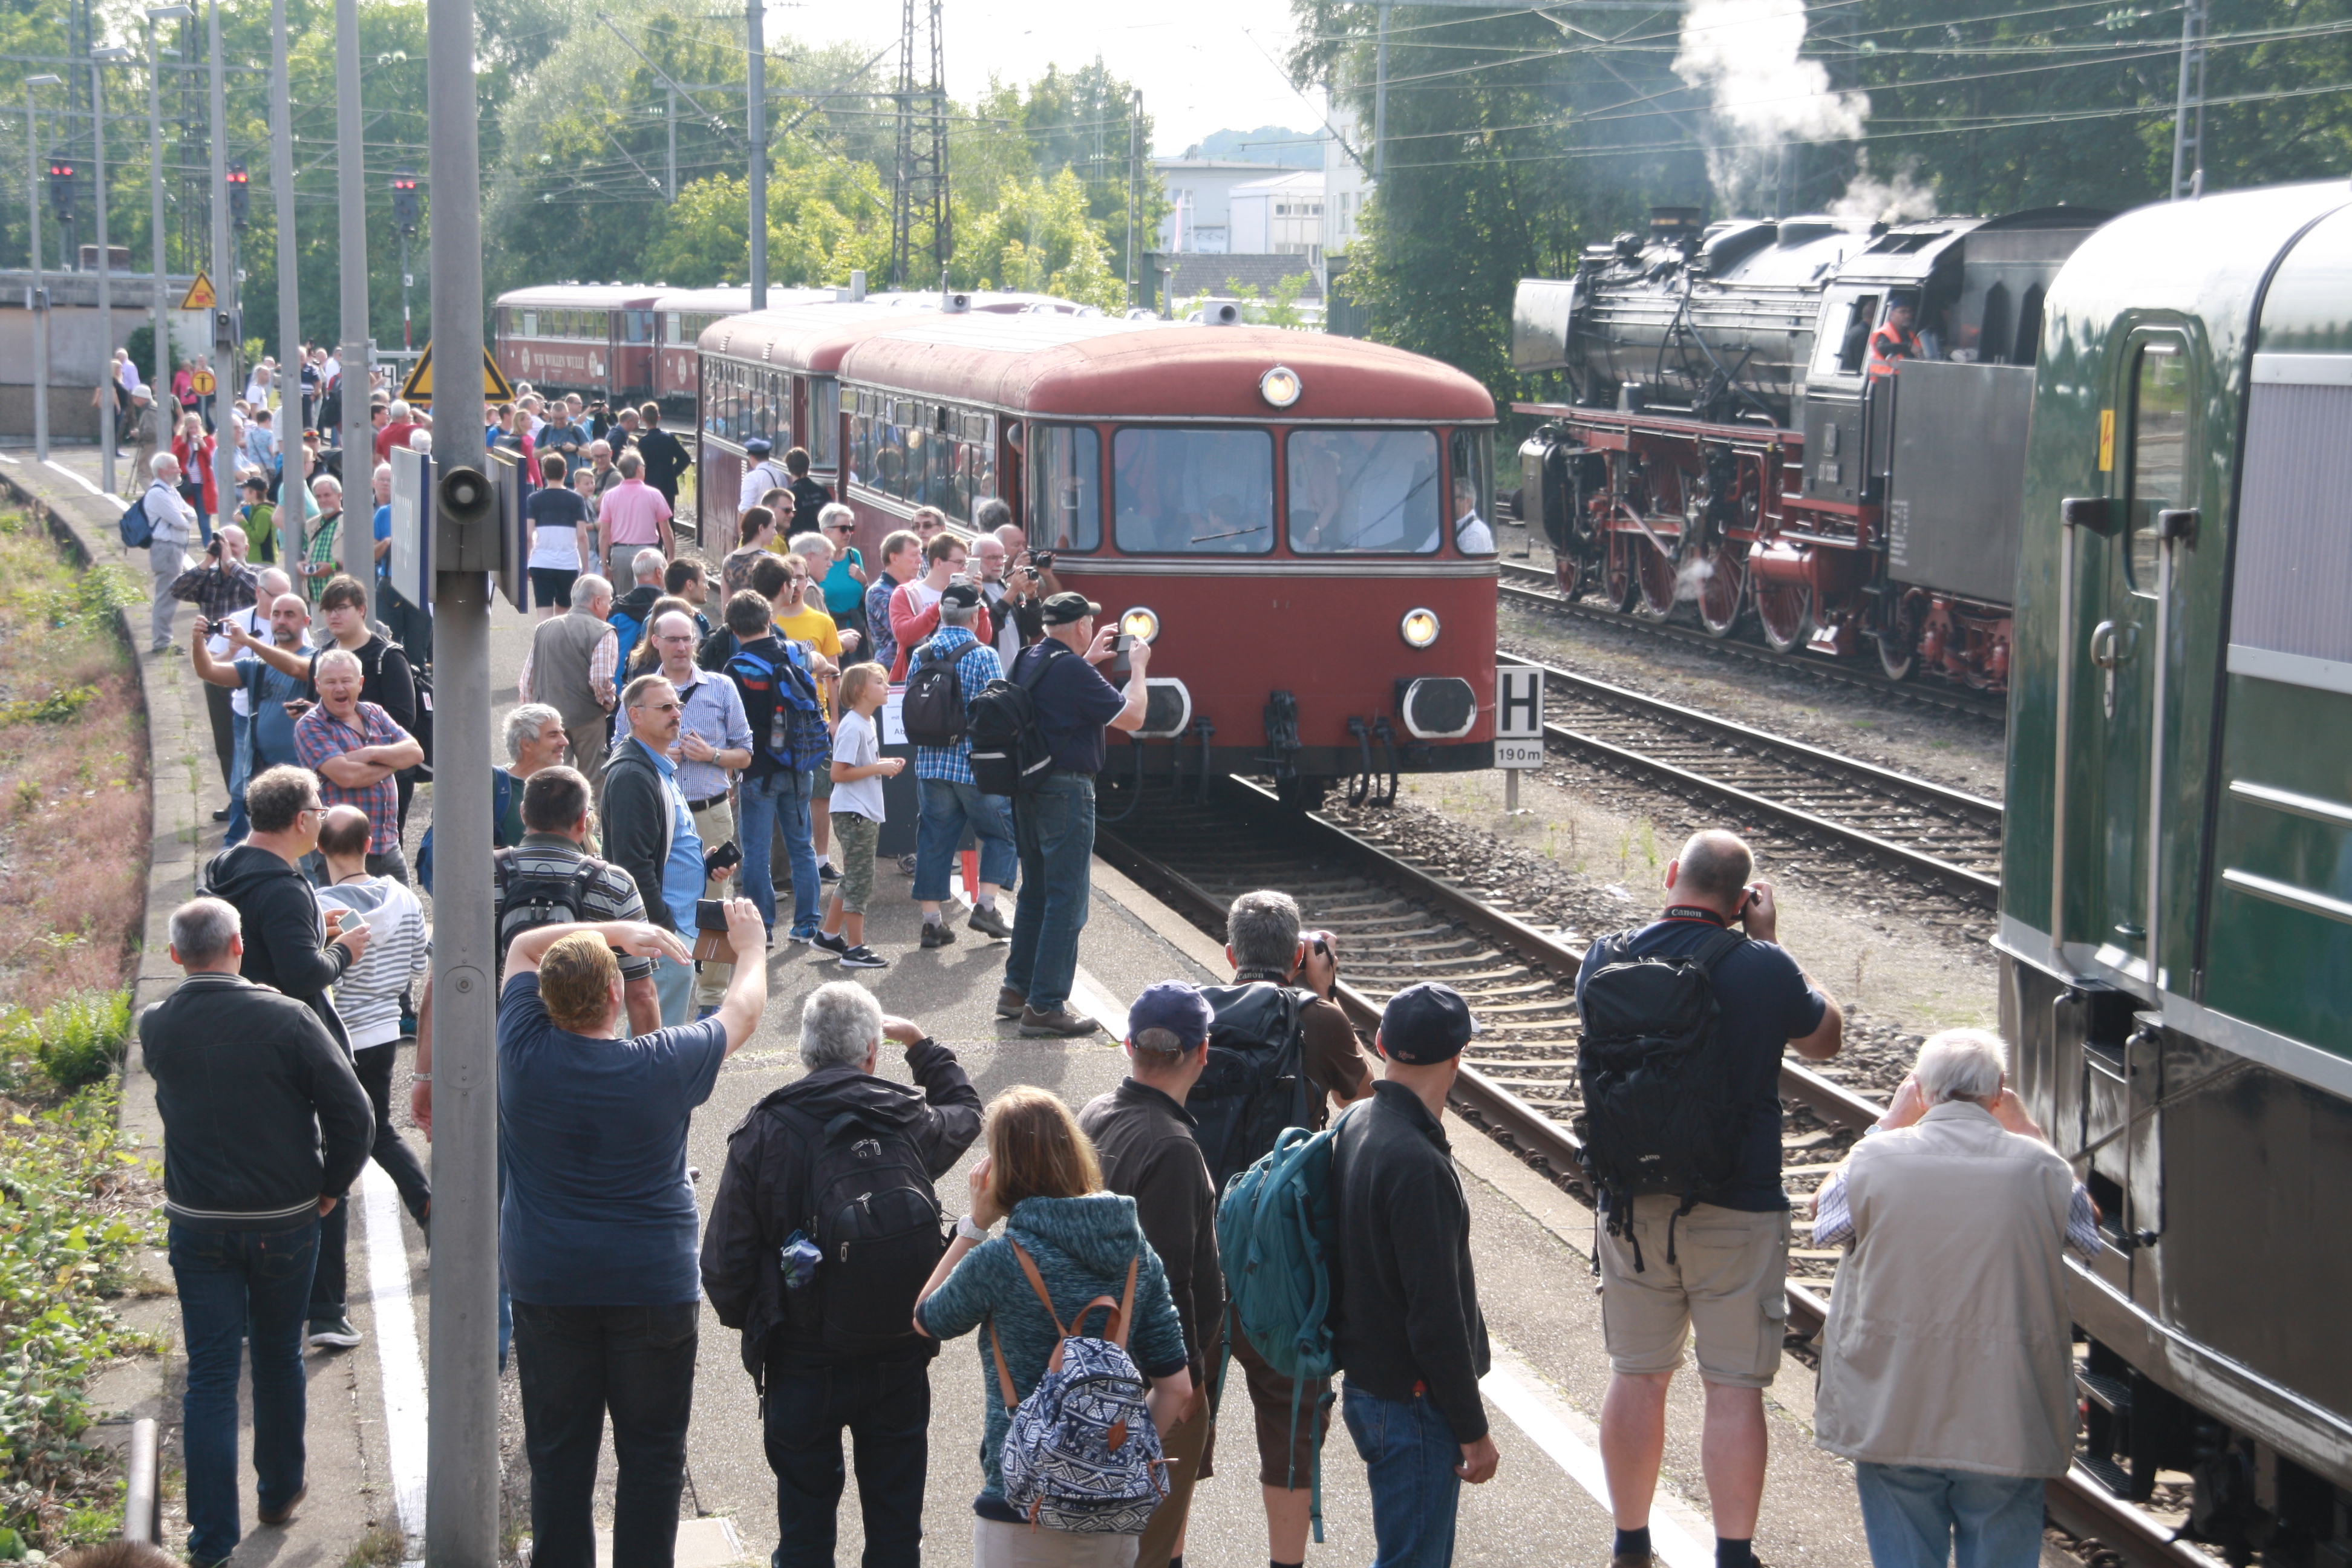 Dampf- und Dieselloks, Triebzüge, E-Loks - Am Bahnhof in Göppingen ist einiges geboten.